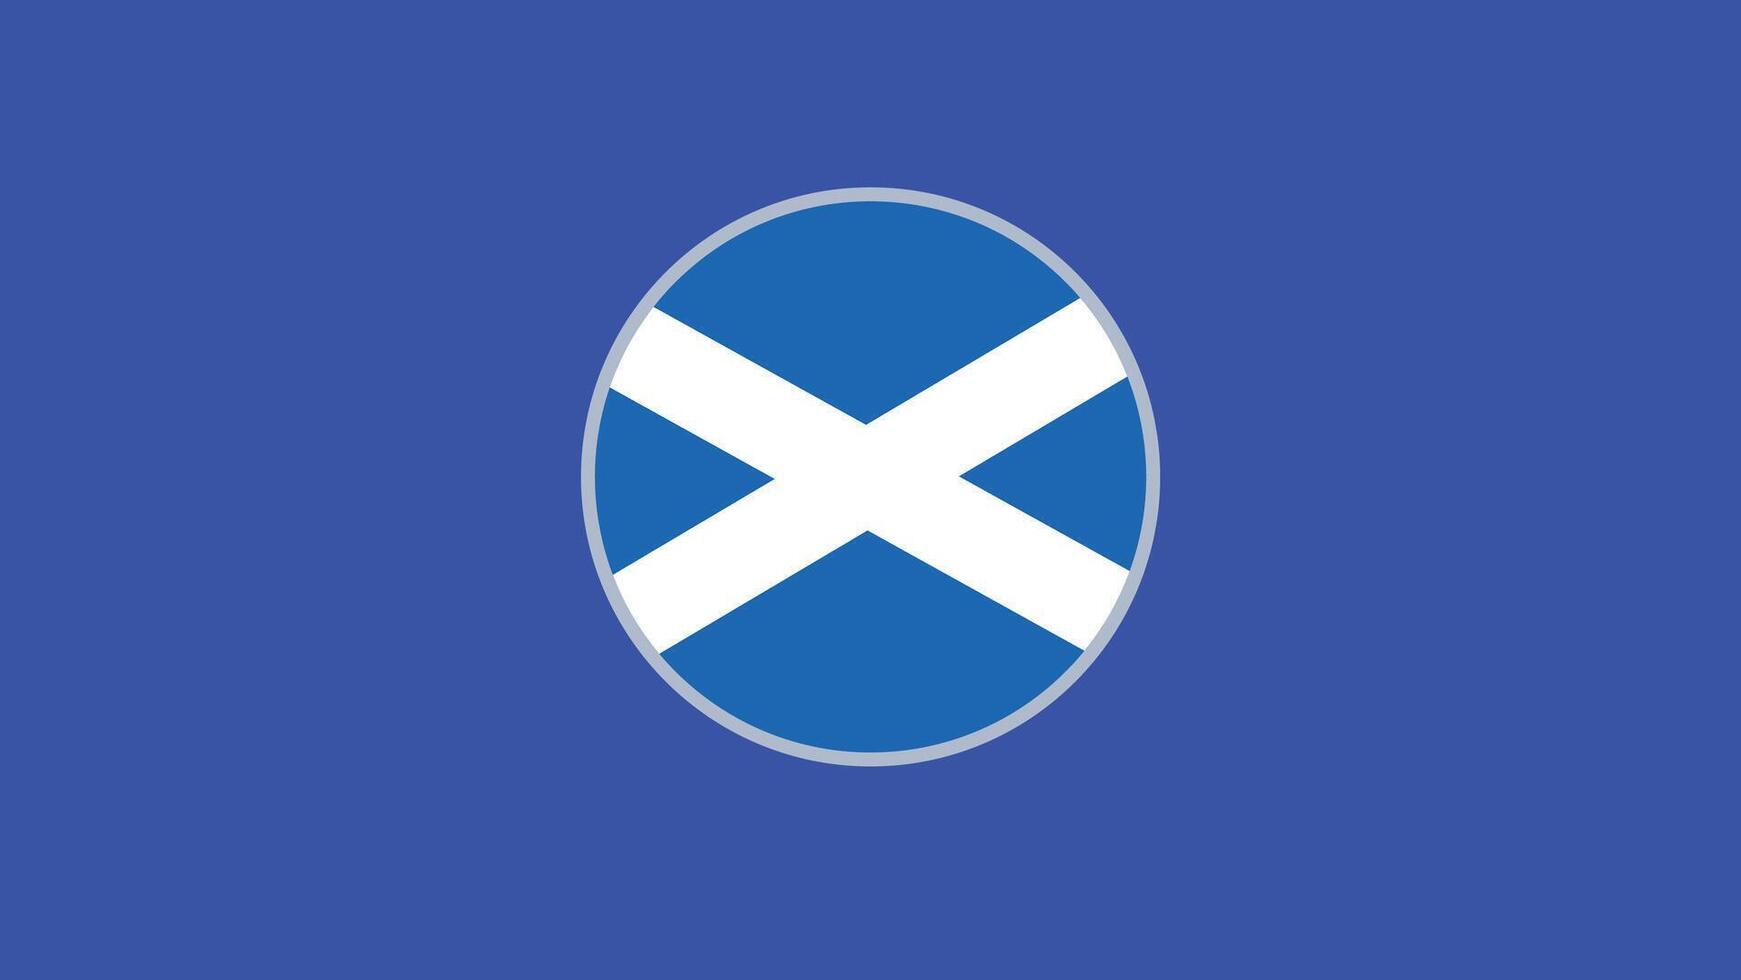 Écosse drapeau emblème européen nations 2024 équipes des pays européen Allemagne Football symbole logo conception illustration vecteur